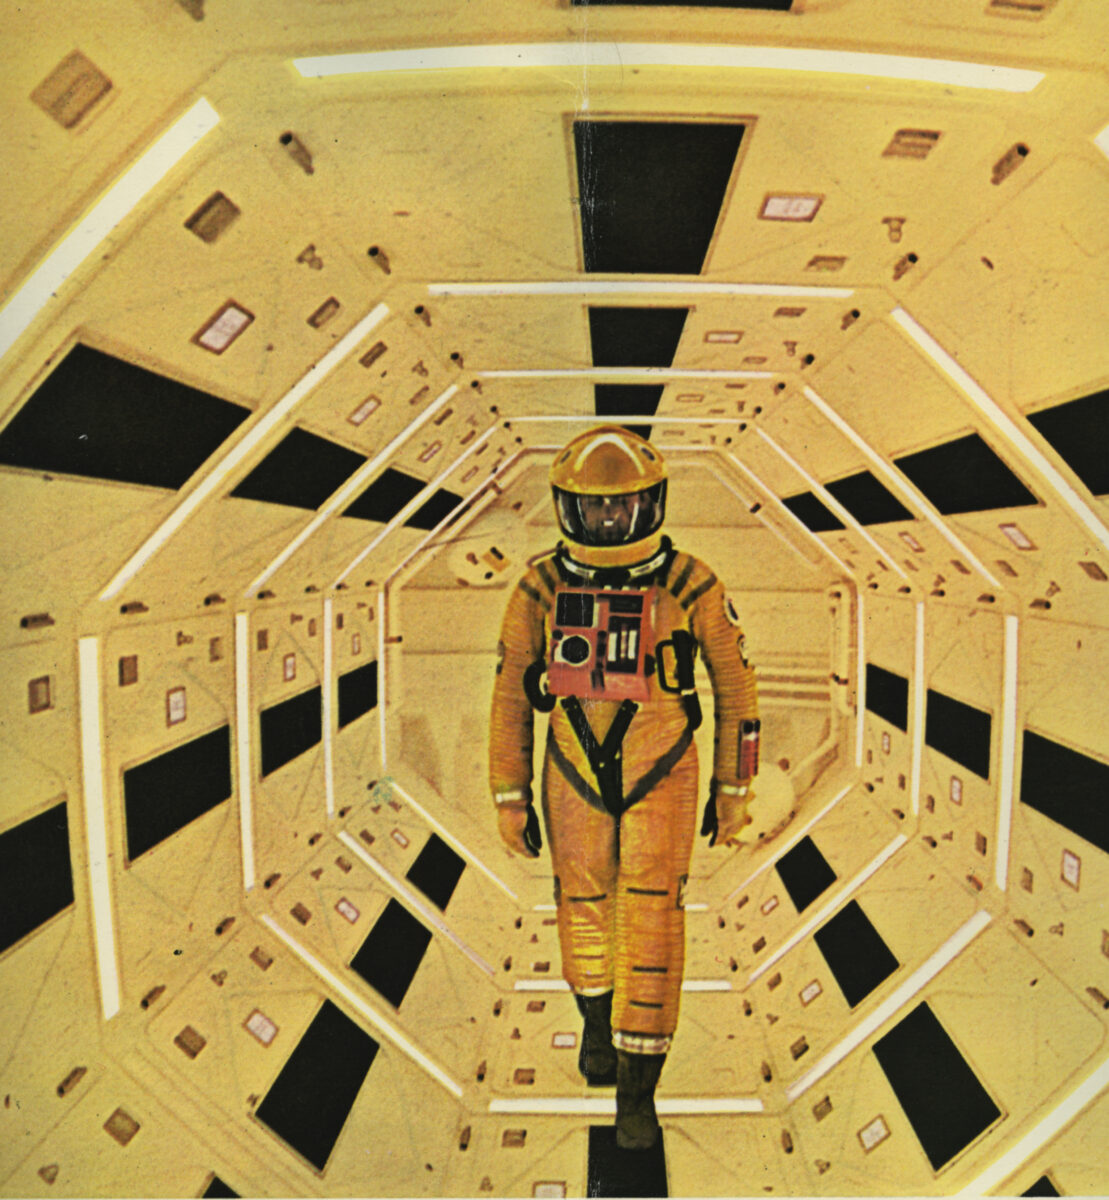 2001 a space odyssey 21 Kubrick